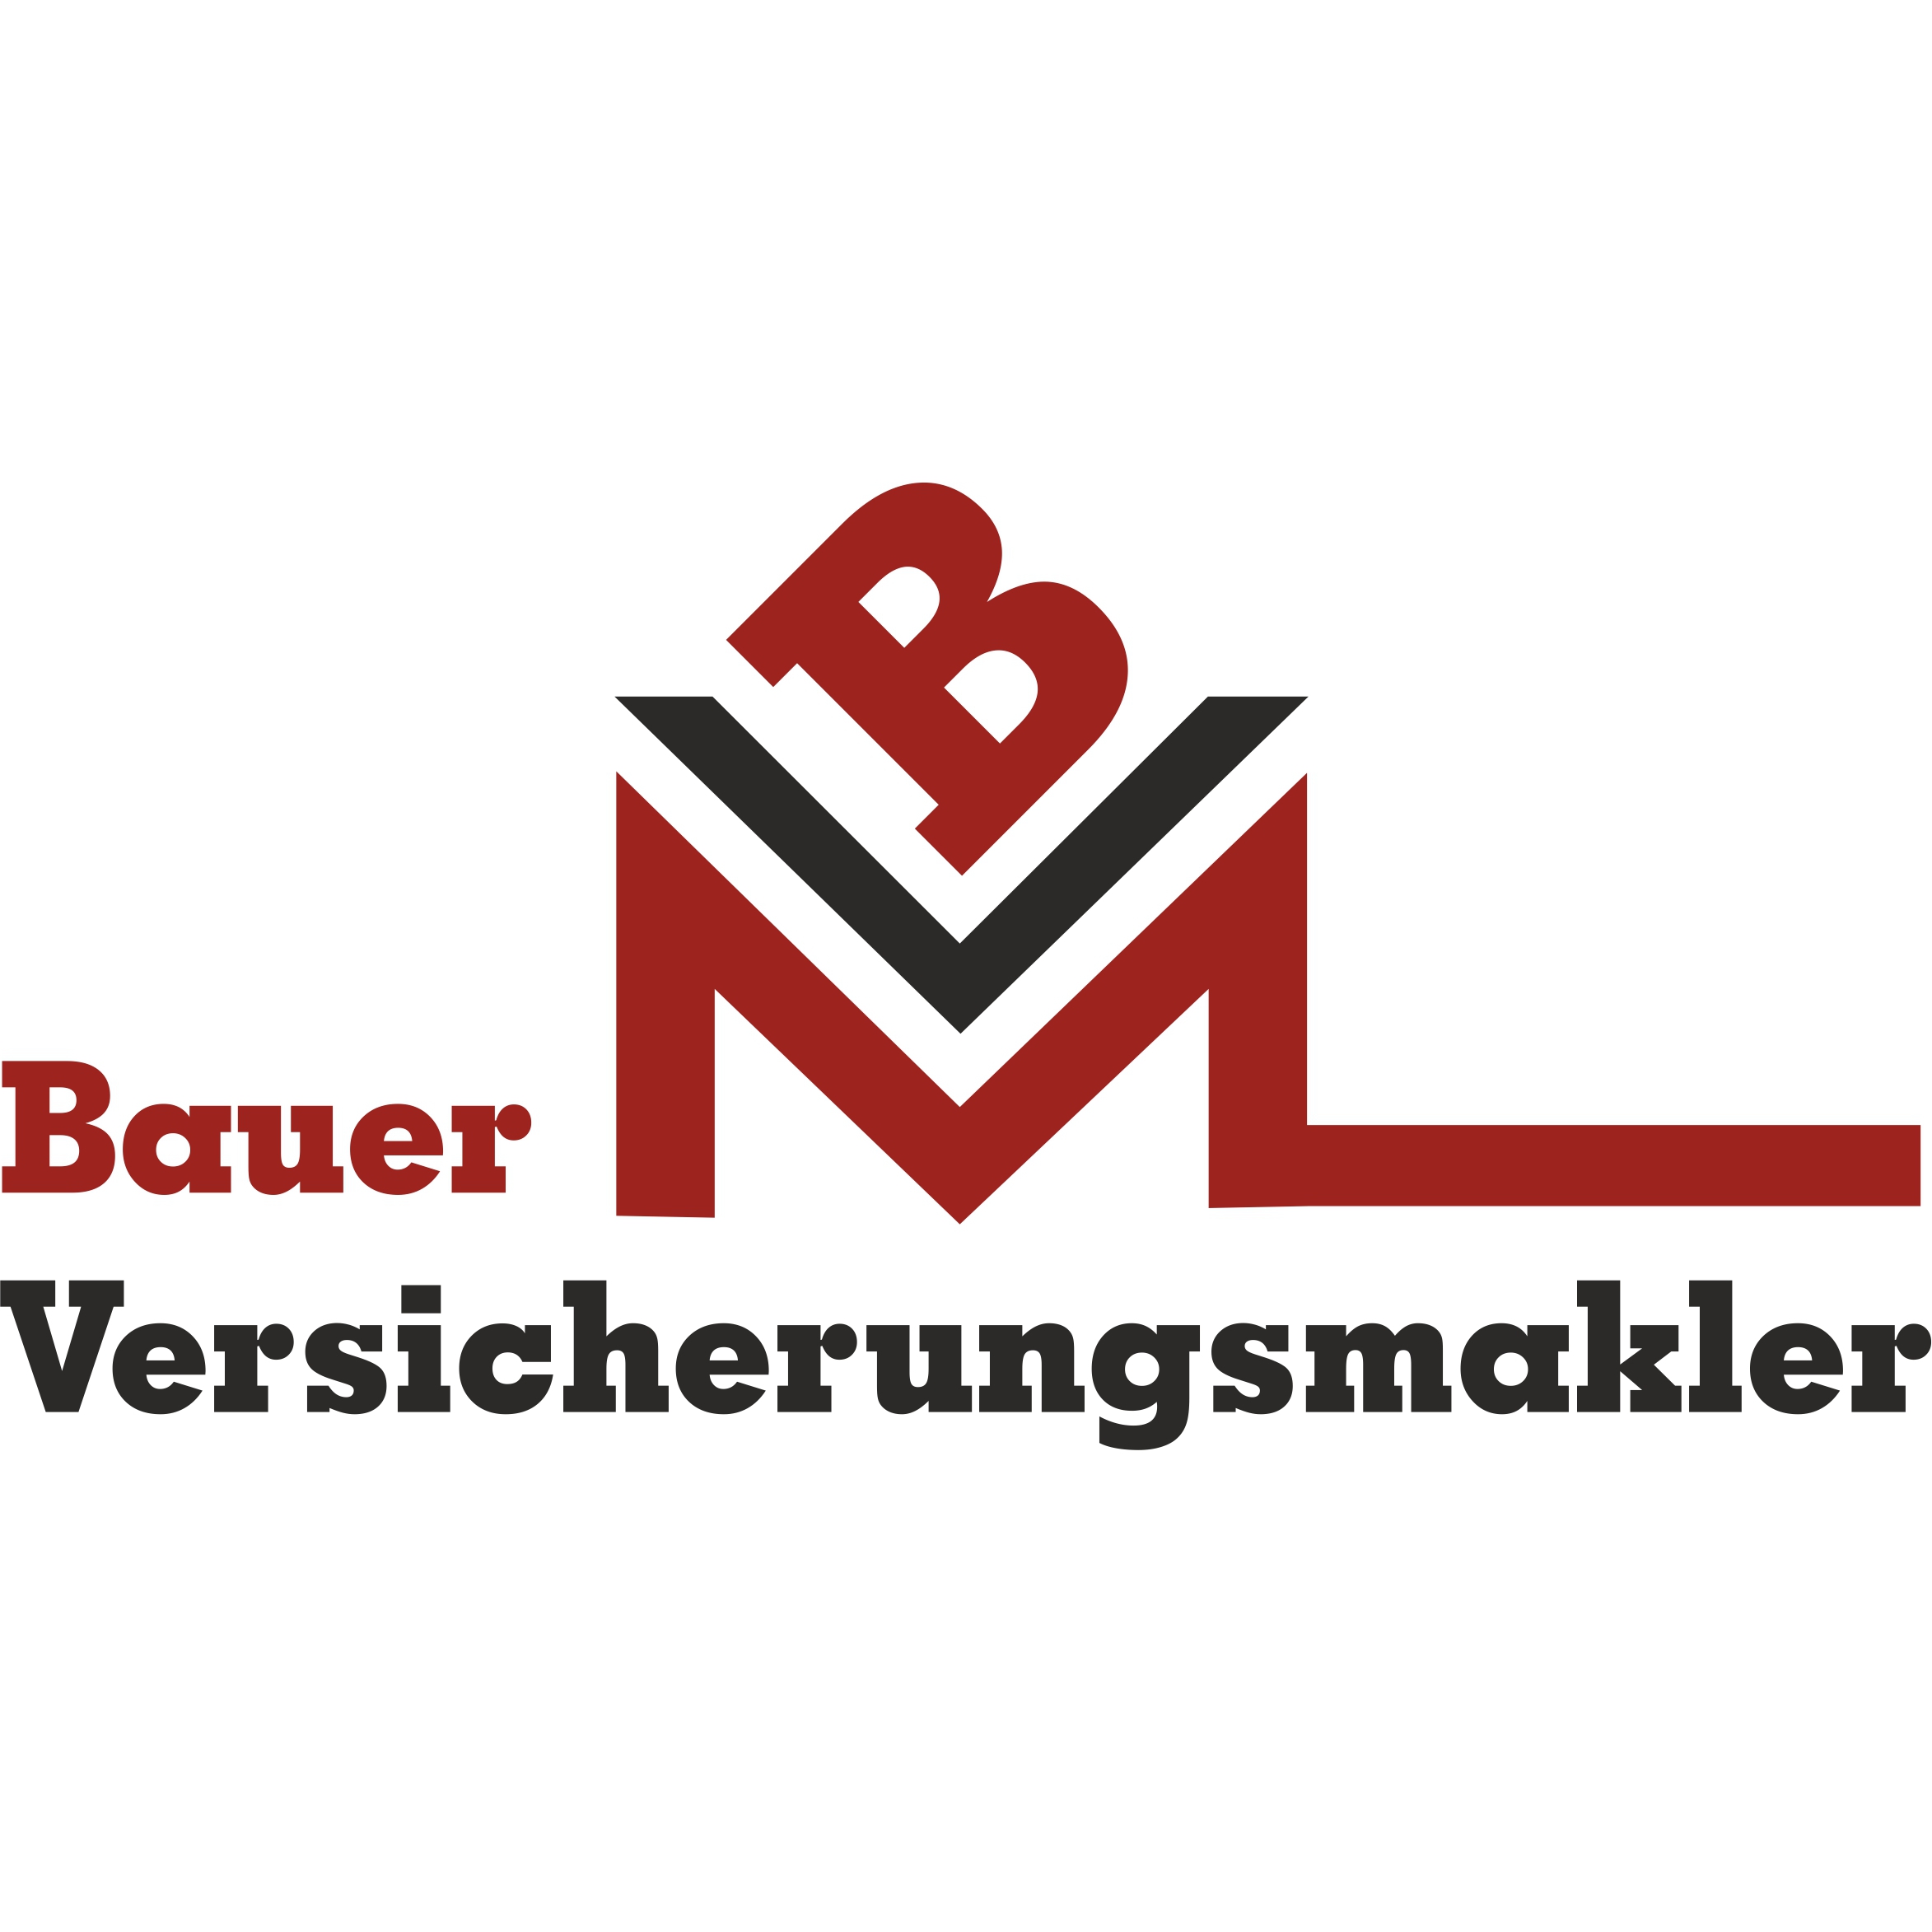 Logo Bauer Versicherungsmakler GmbH & Co KG.